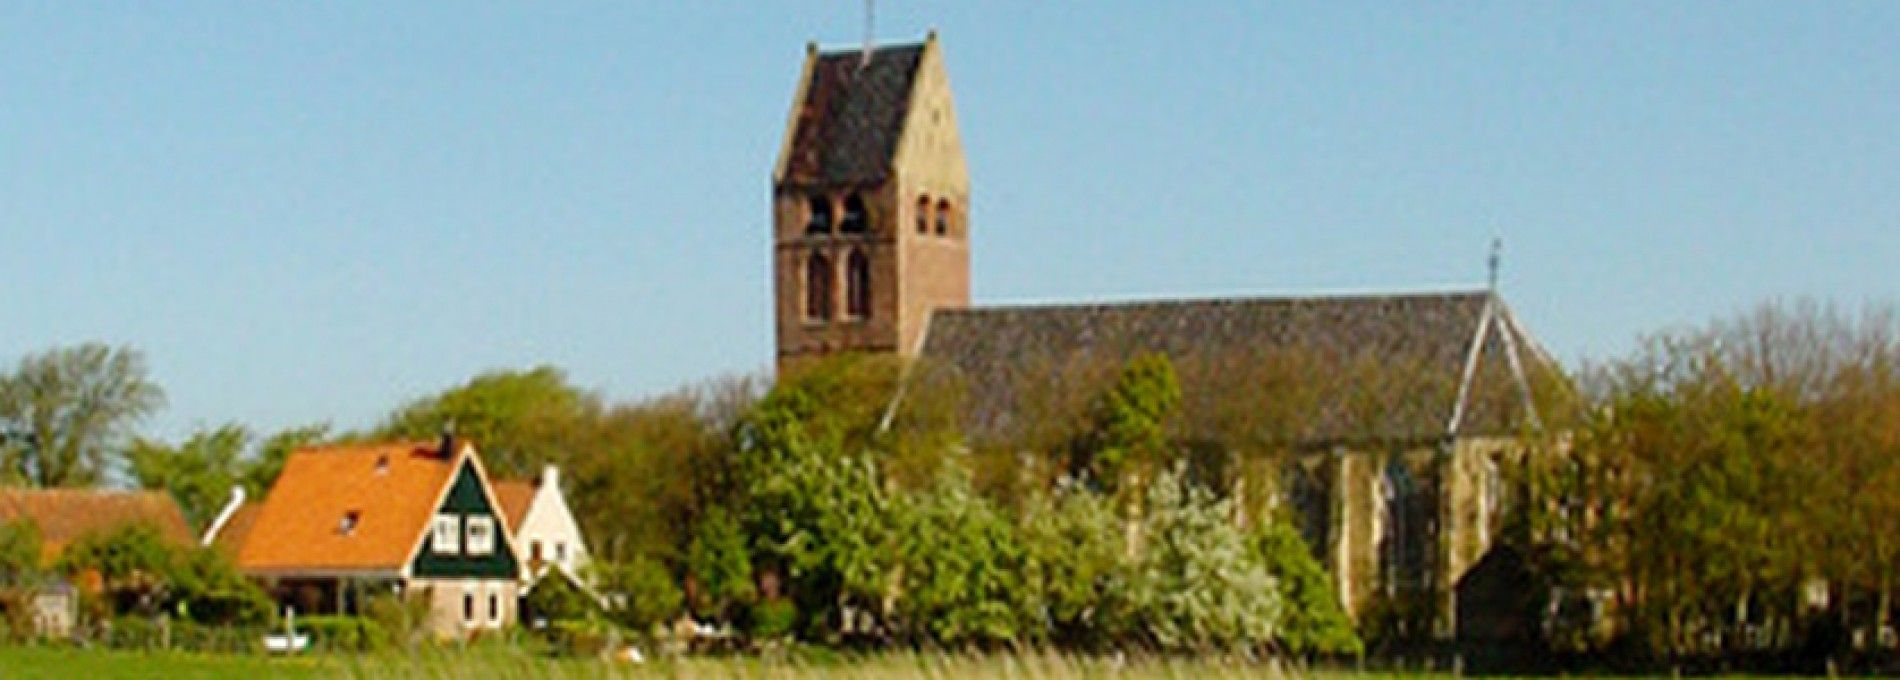 Niederländisch-reformierte Kirche in Hollum, auf Ameland.